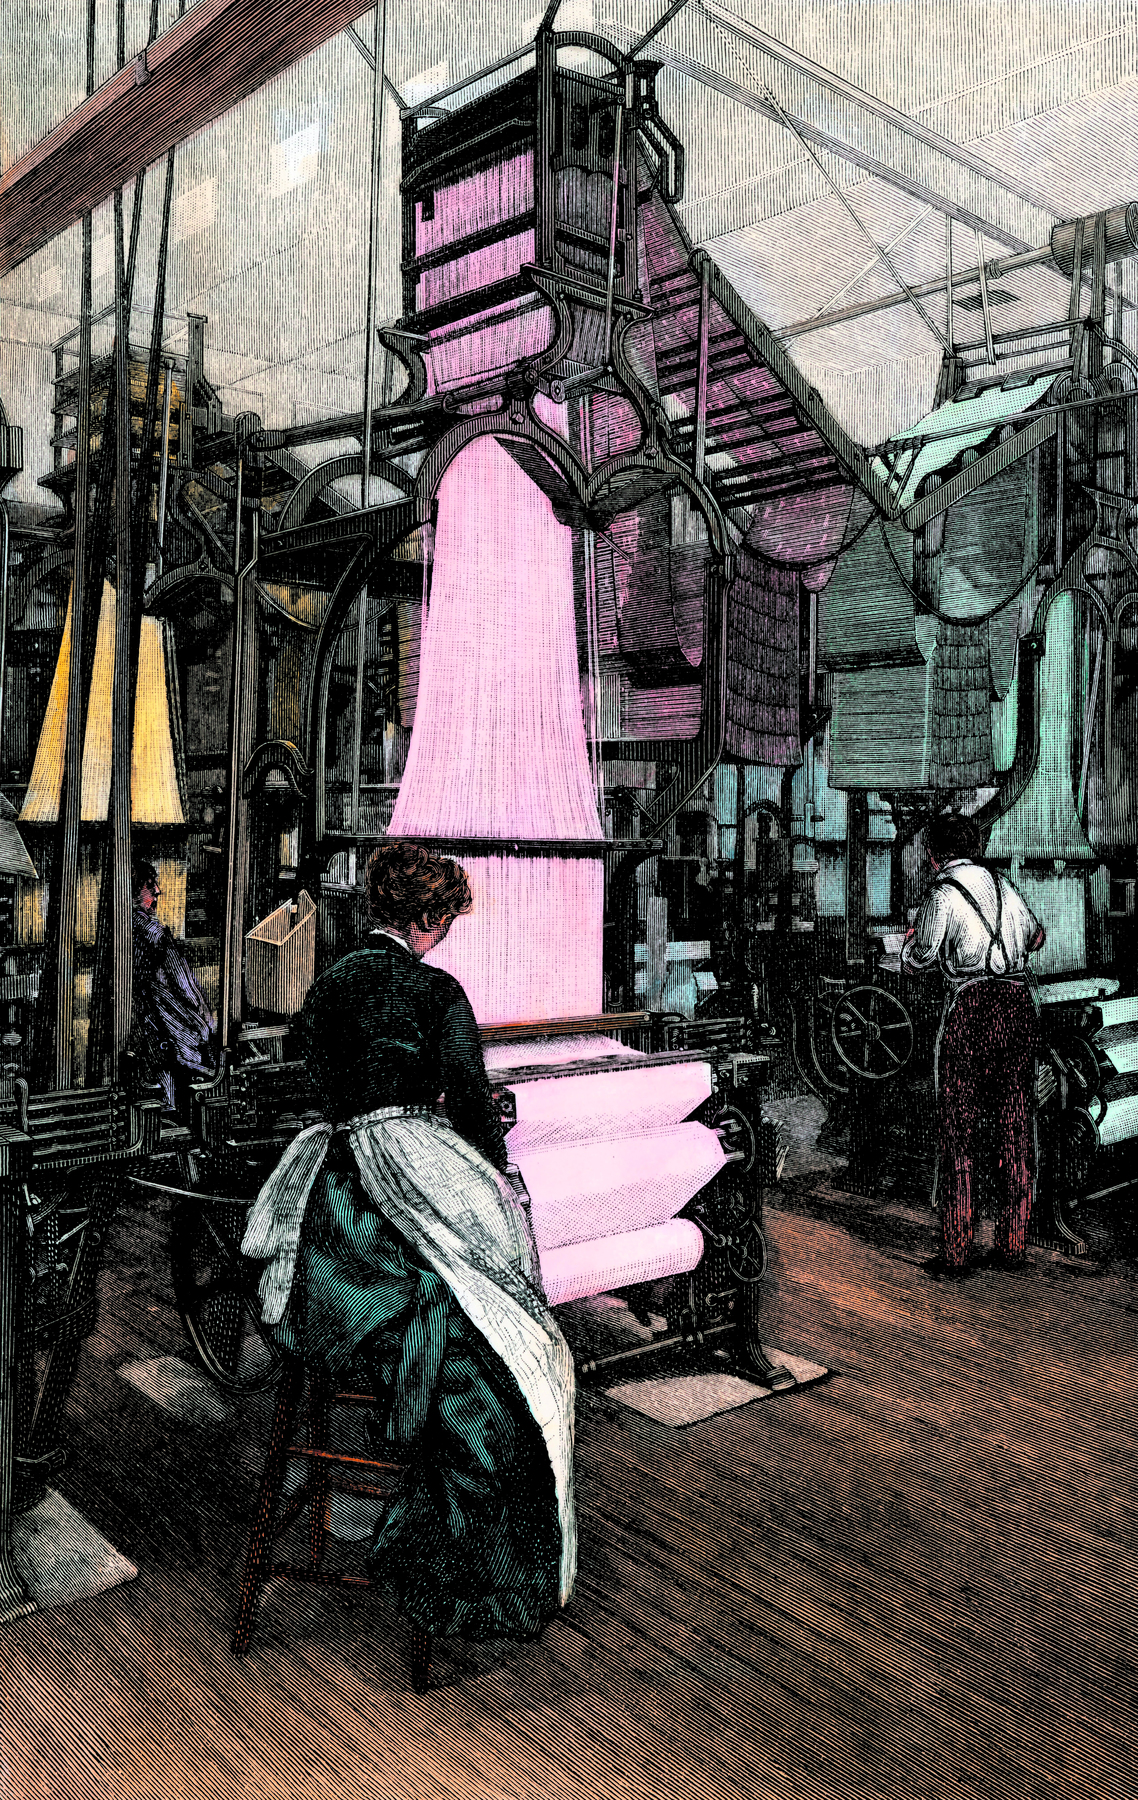 Gravura. Em uma fábrica, uma mulher vista de costas, sentada sobre um banquinho, em frente a uma máquina de tecer, com faixas longas de tecido na cor rosa.